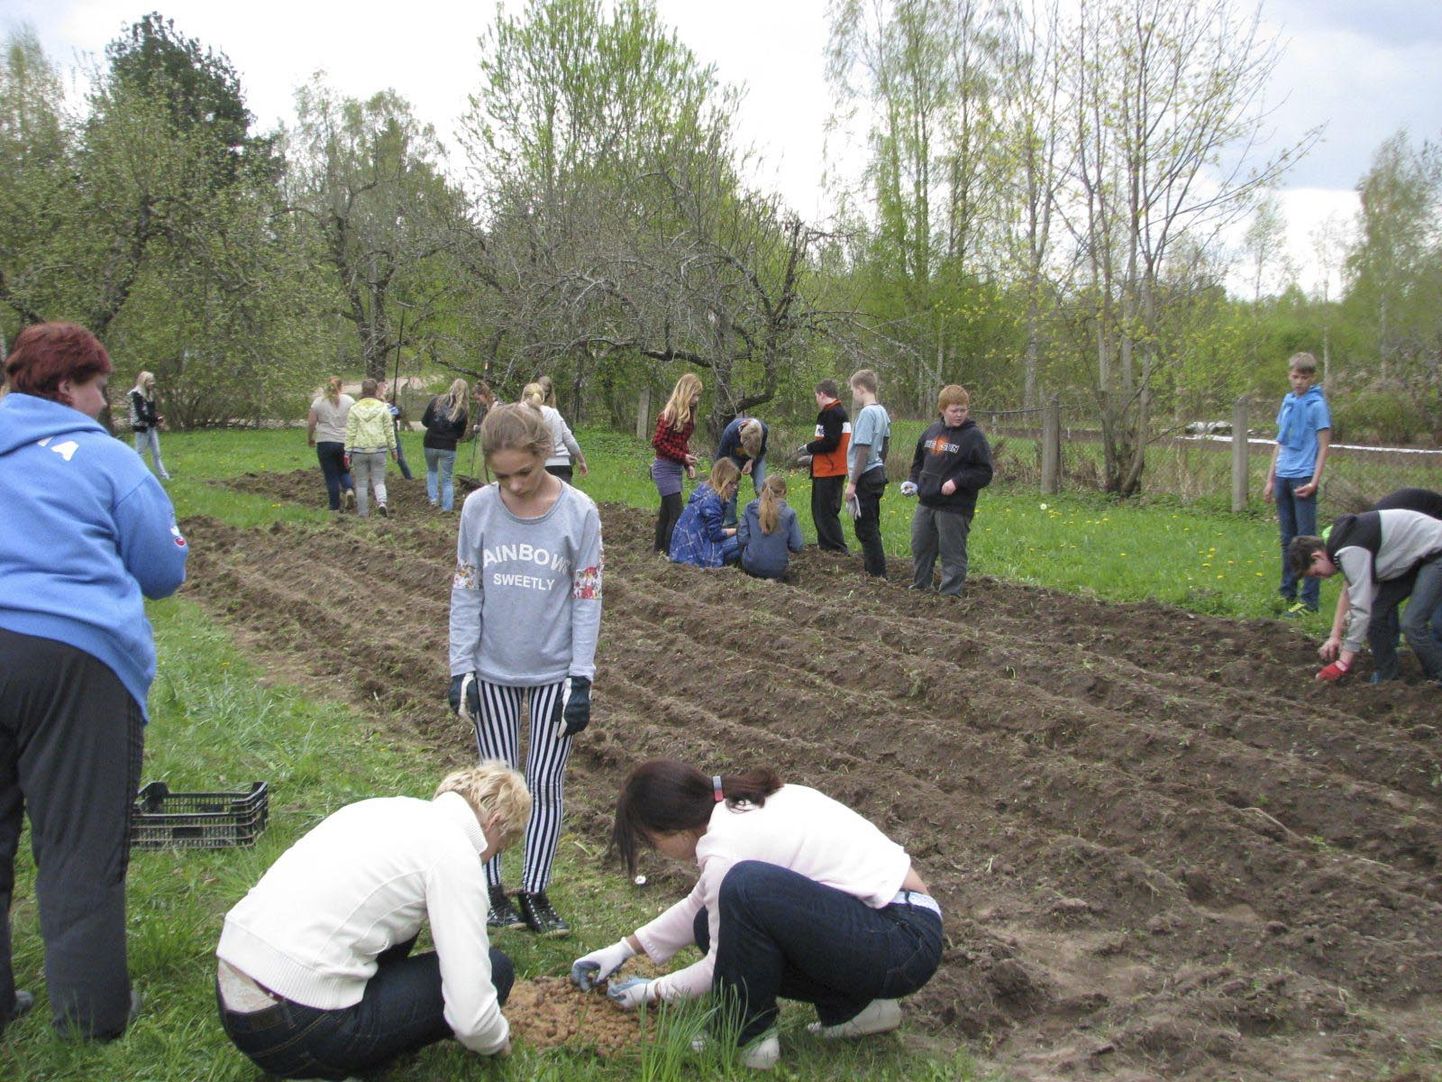 Suure-Jaani koolilapsed, kes 2013. aastal tammetõrud maasse pistsid, et neist Eestile kingituseks tammik kasvatada, on praeguseks kooli lõpetanud.